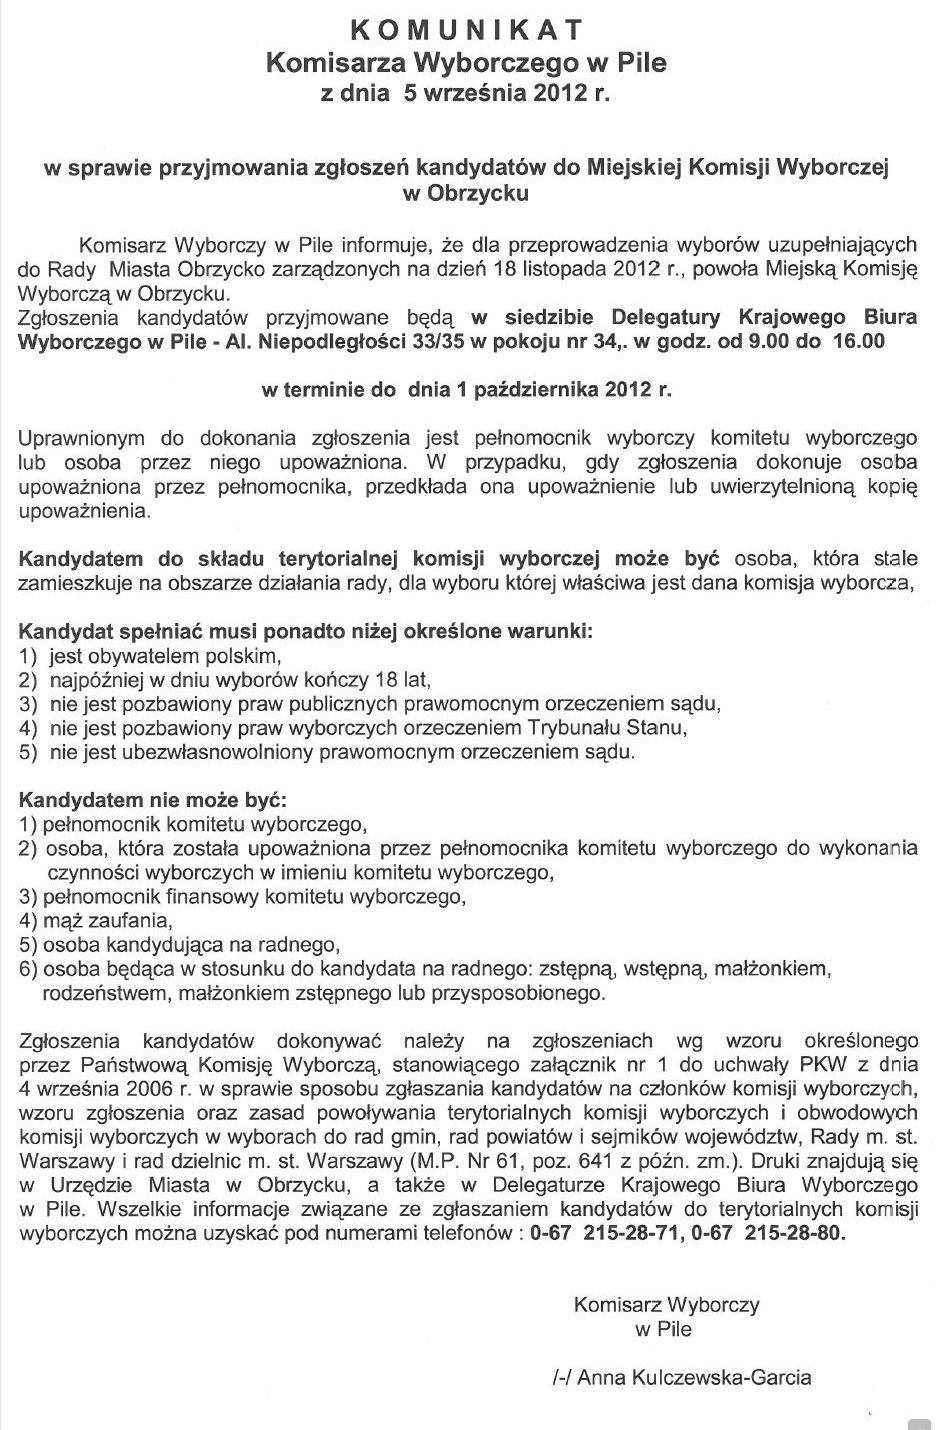 Komunikat Komisarza Wyborczego w Pile w sprawie przyjmowania zgłoszeń kandydatów do Miejskiej Komisji Wyborczej w Obrzycku